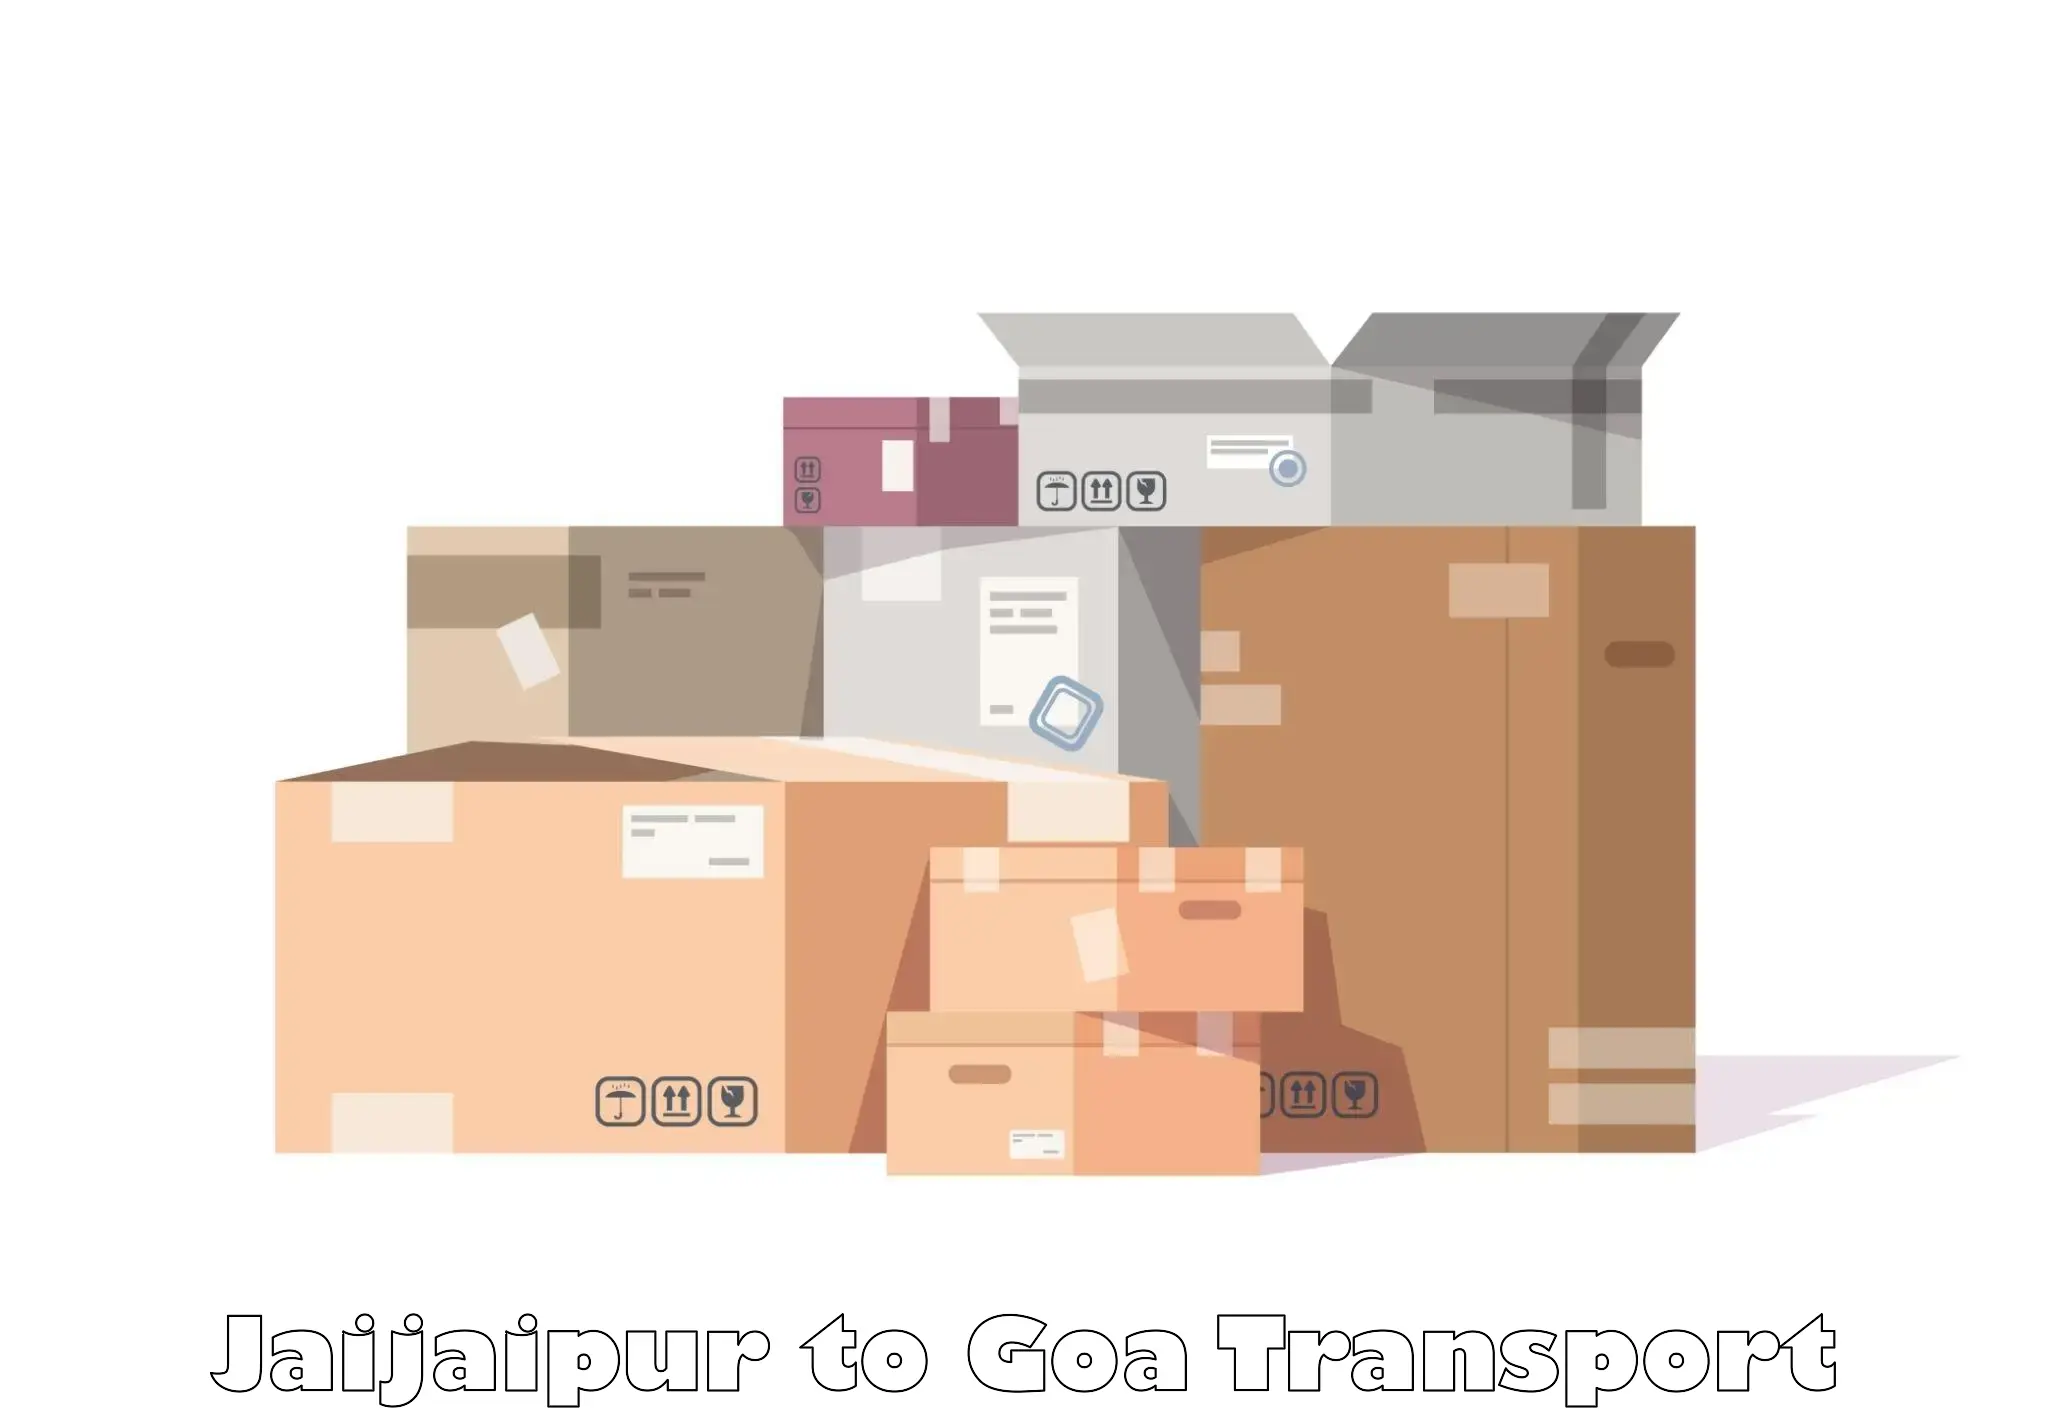 Furniture transport service Jaijaipur to Goa